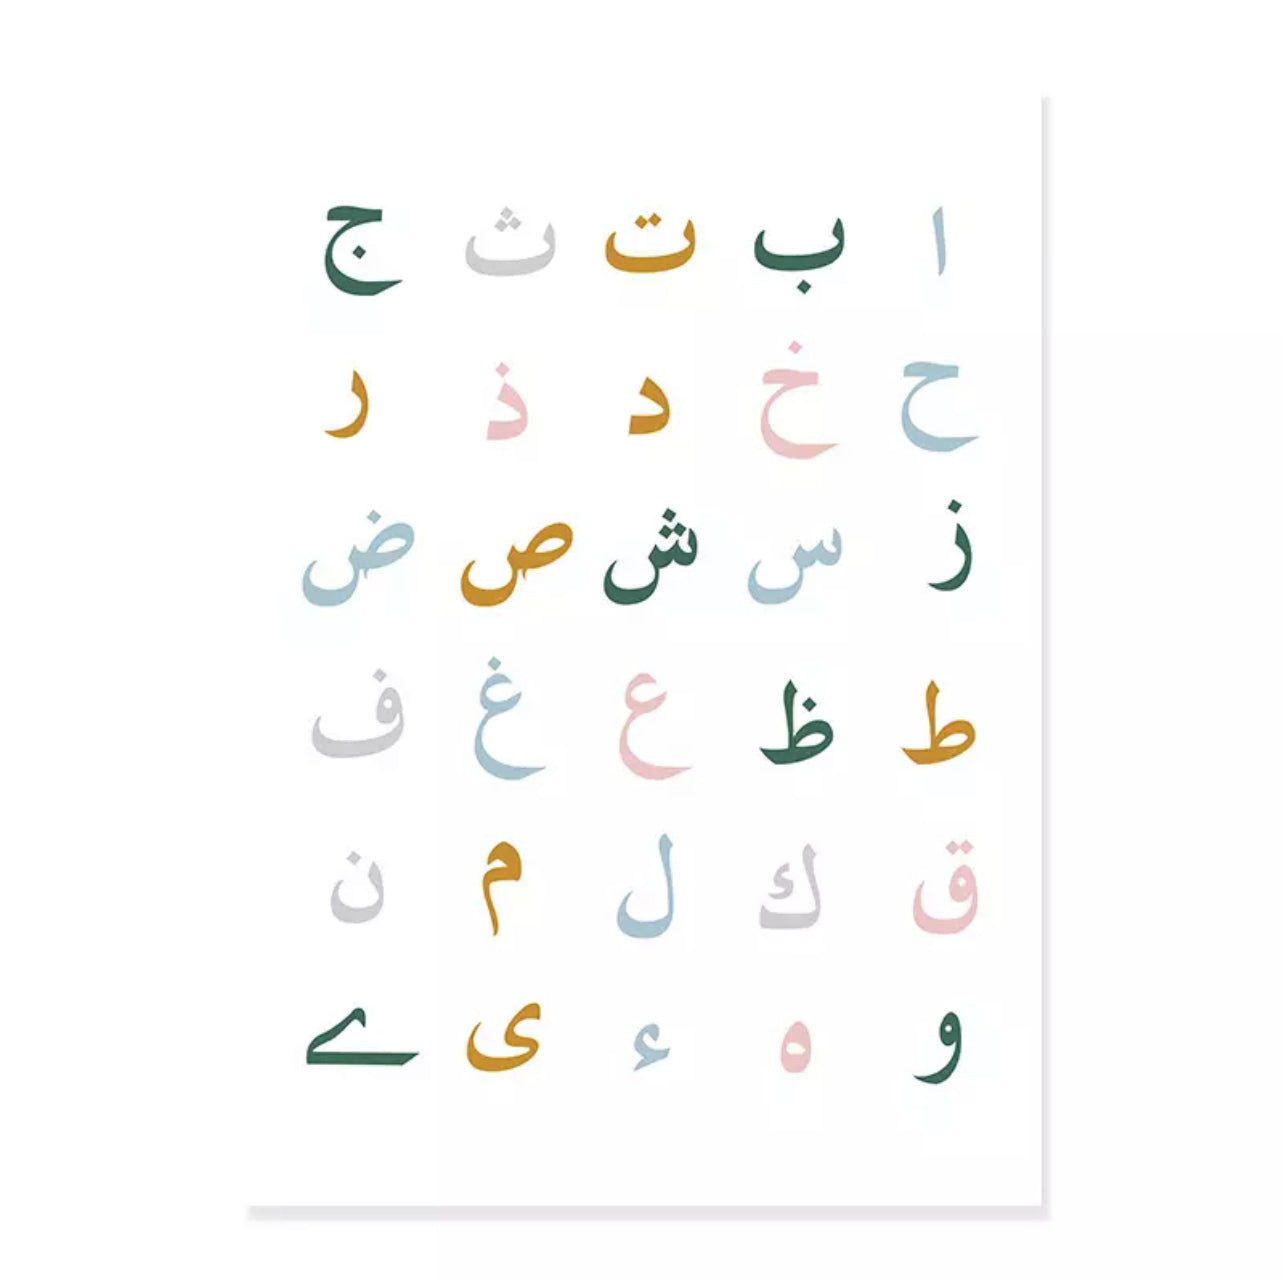 Nursery Islamic Arabic Alphabet And Alphabet Wall Art